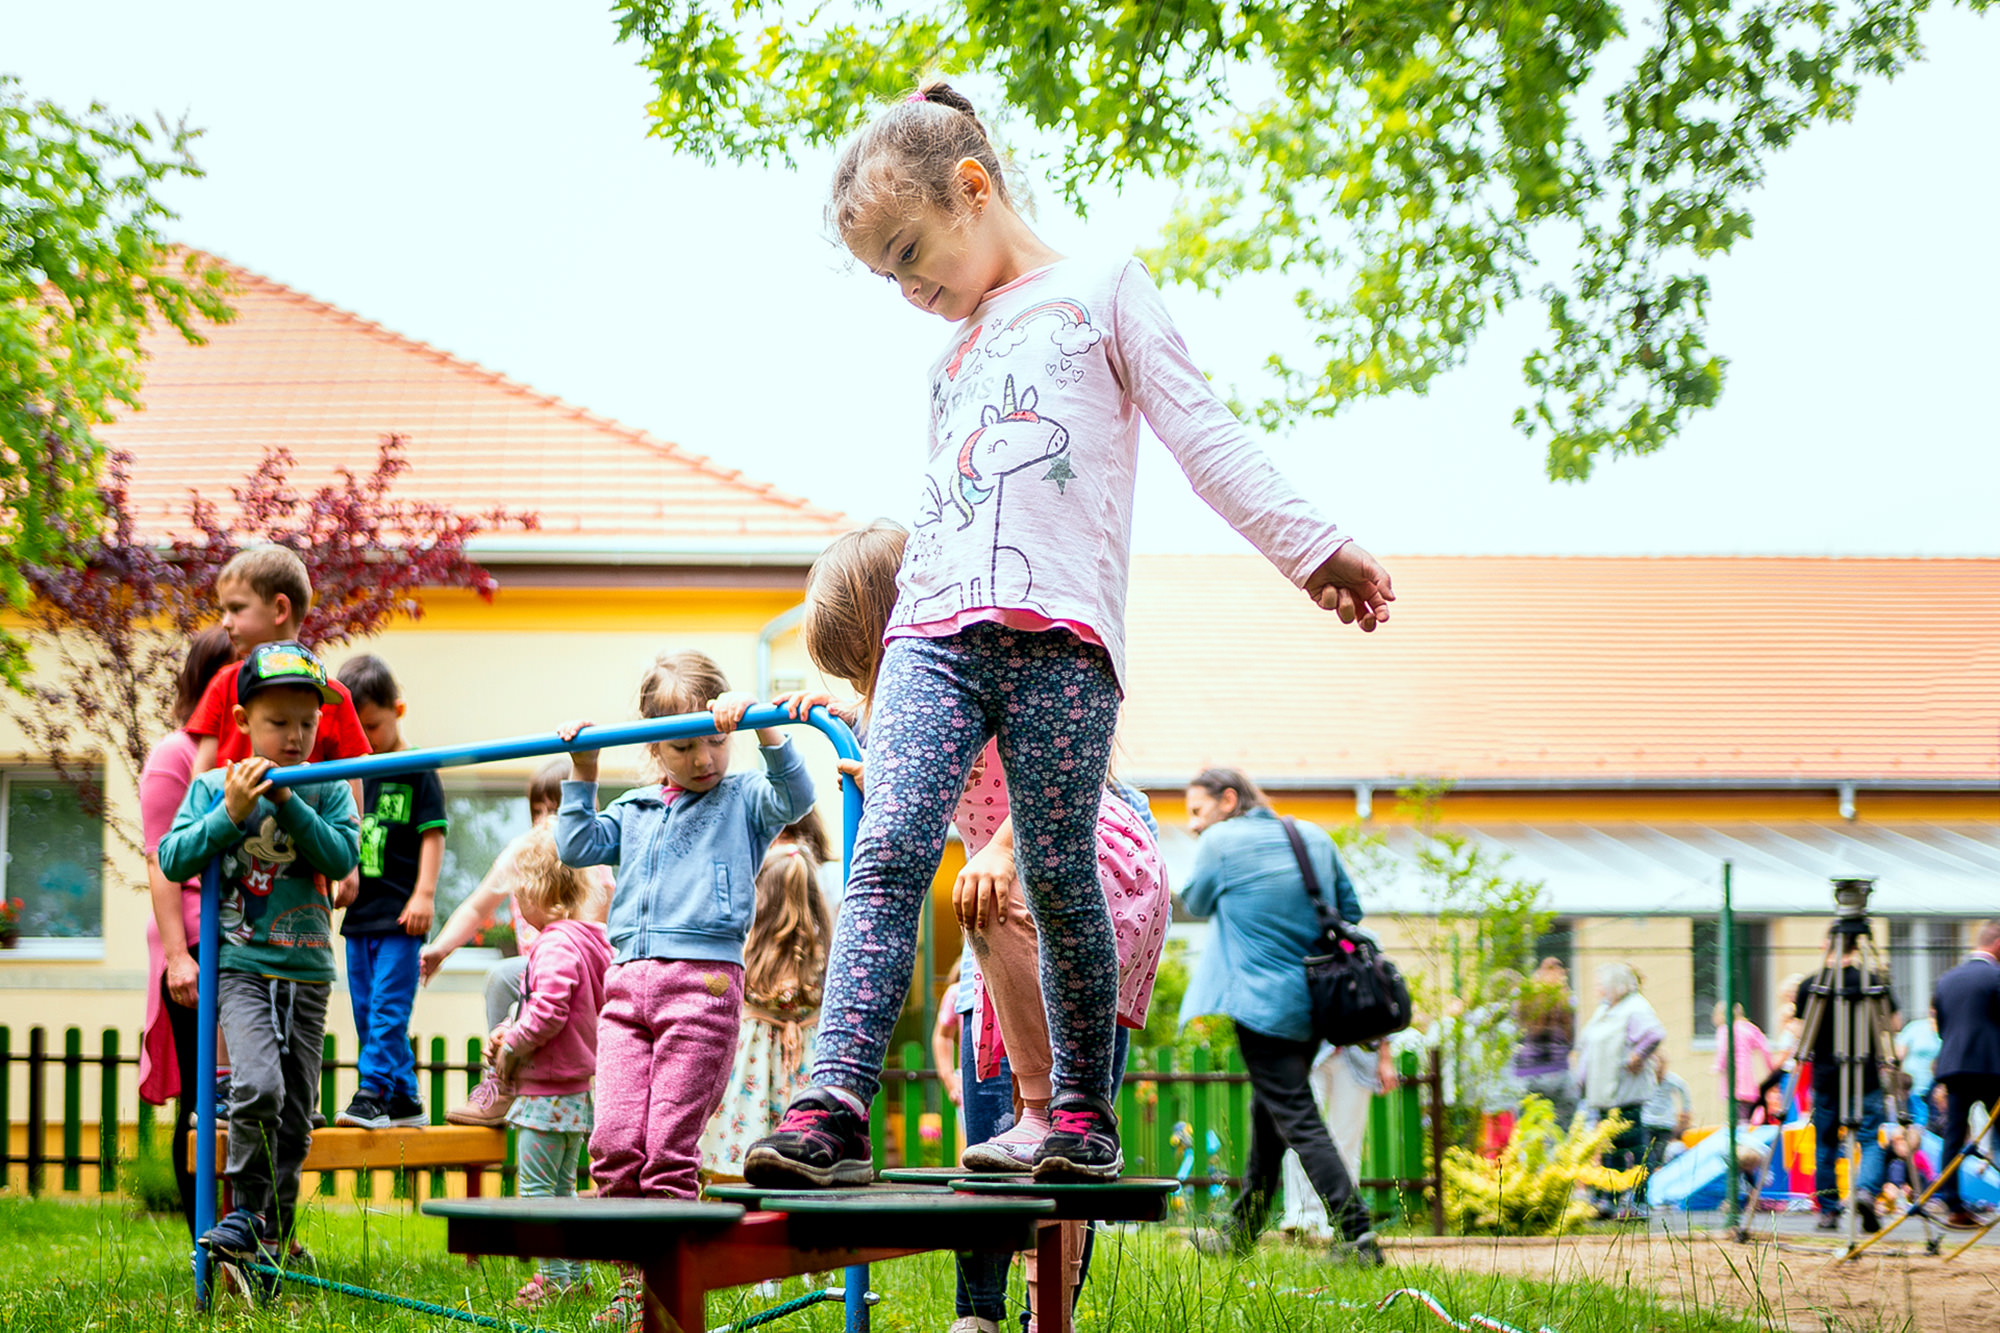 Beliebt sind bei den Kindern des Budapester Kindergartens die neuen Balanciergeräte, die mit der Spende von AviAlliance angeschafft wurden.